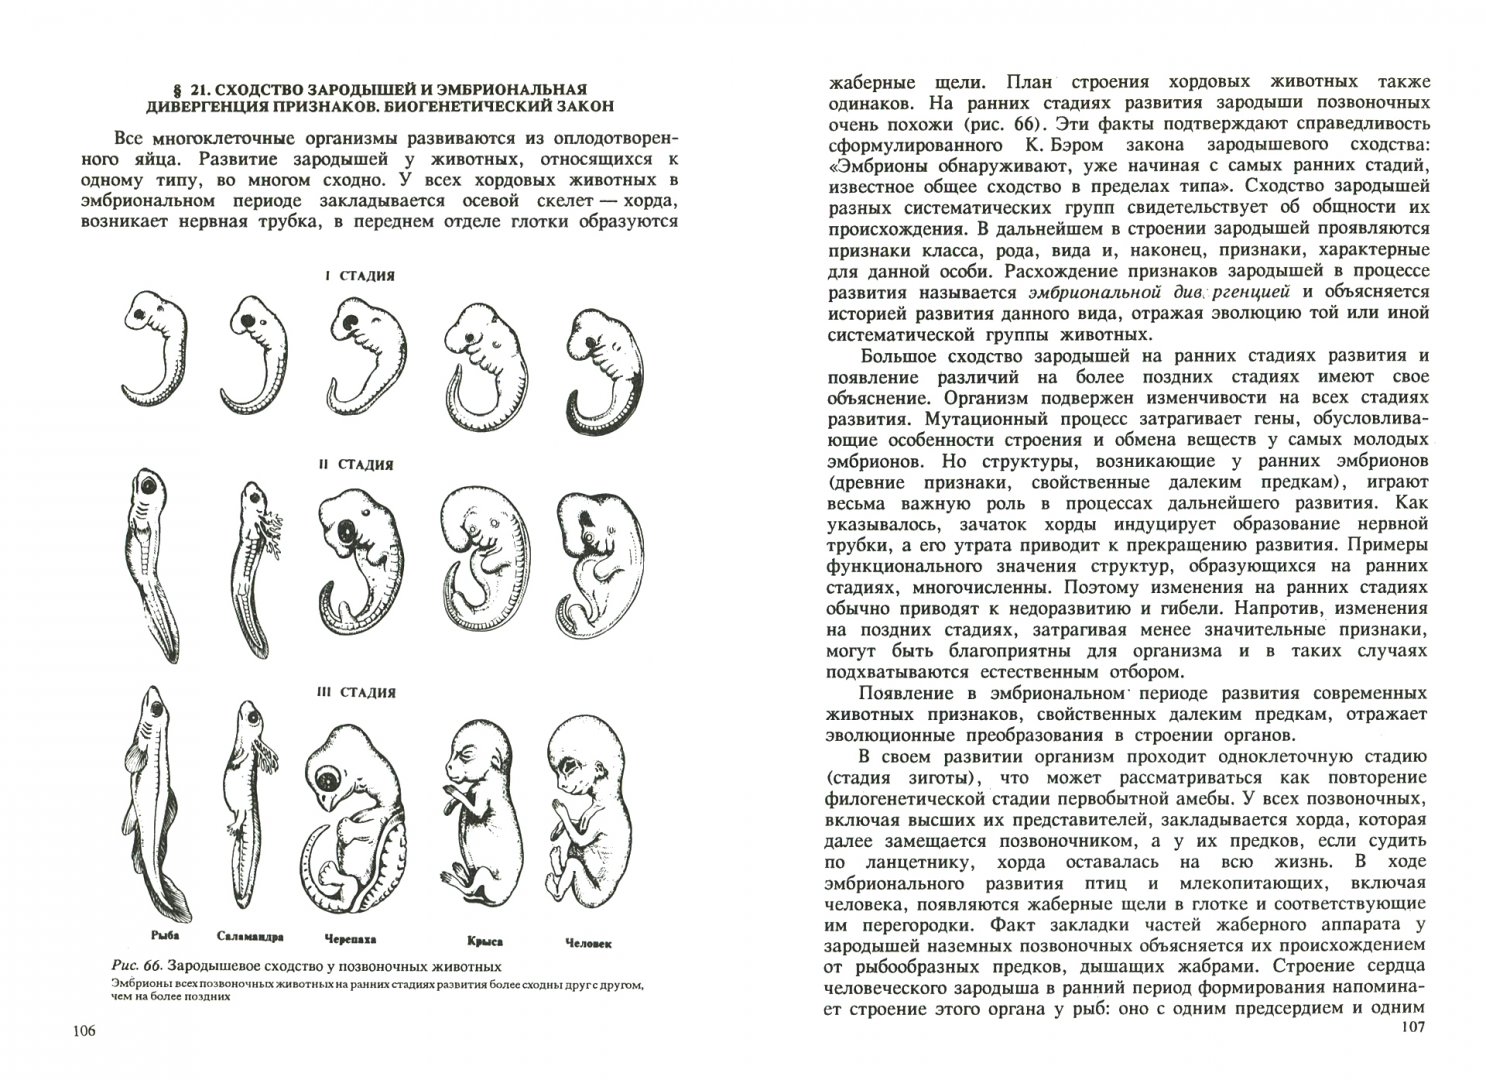 Наличие хвоста у зародыша человека на ранней. Сходство зародышей позвоночных. Сравнение зародышей позвоночных на разных стадиях развития таблица. Сходство зародышей человека и других. Сходства зародышей человека и млекопитающих.